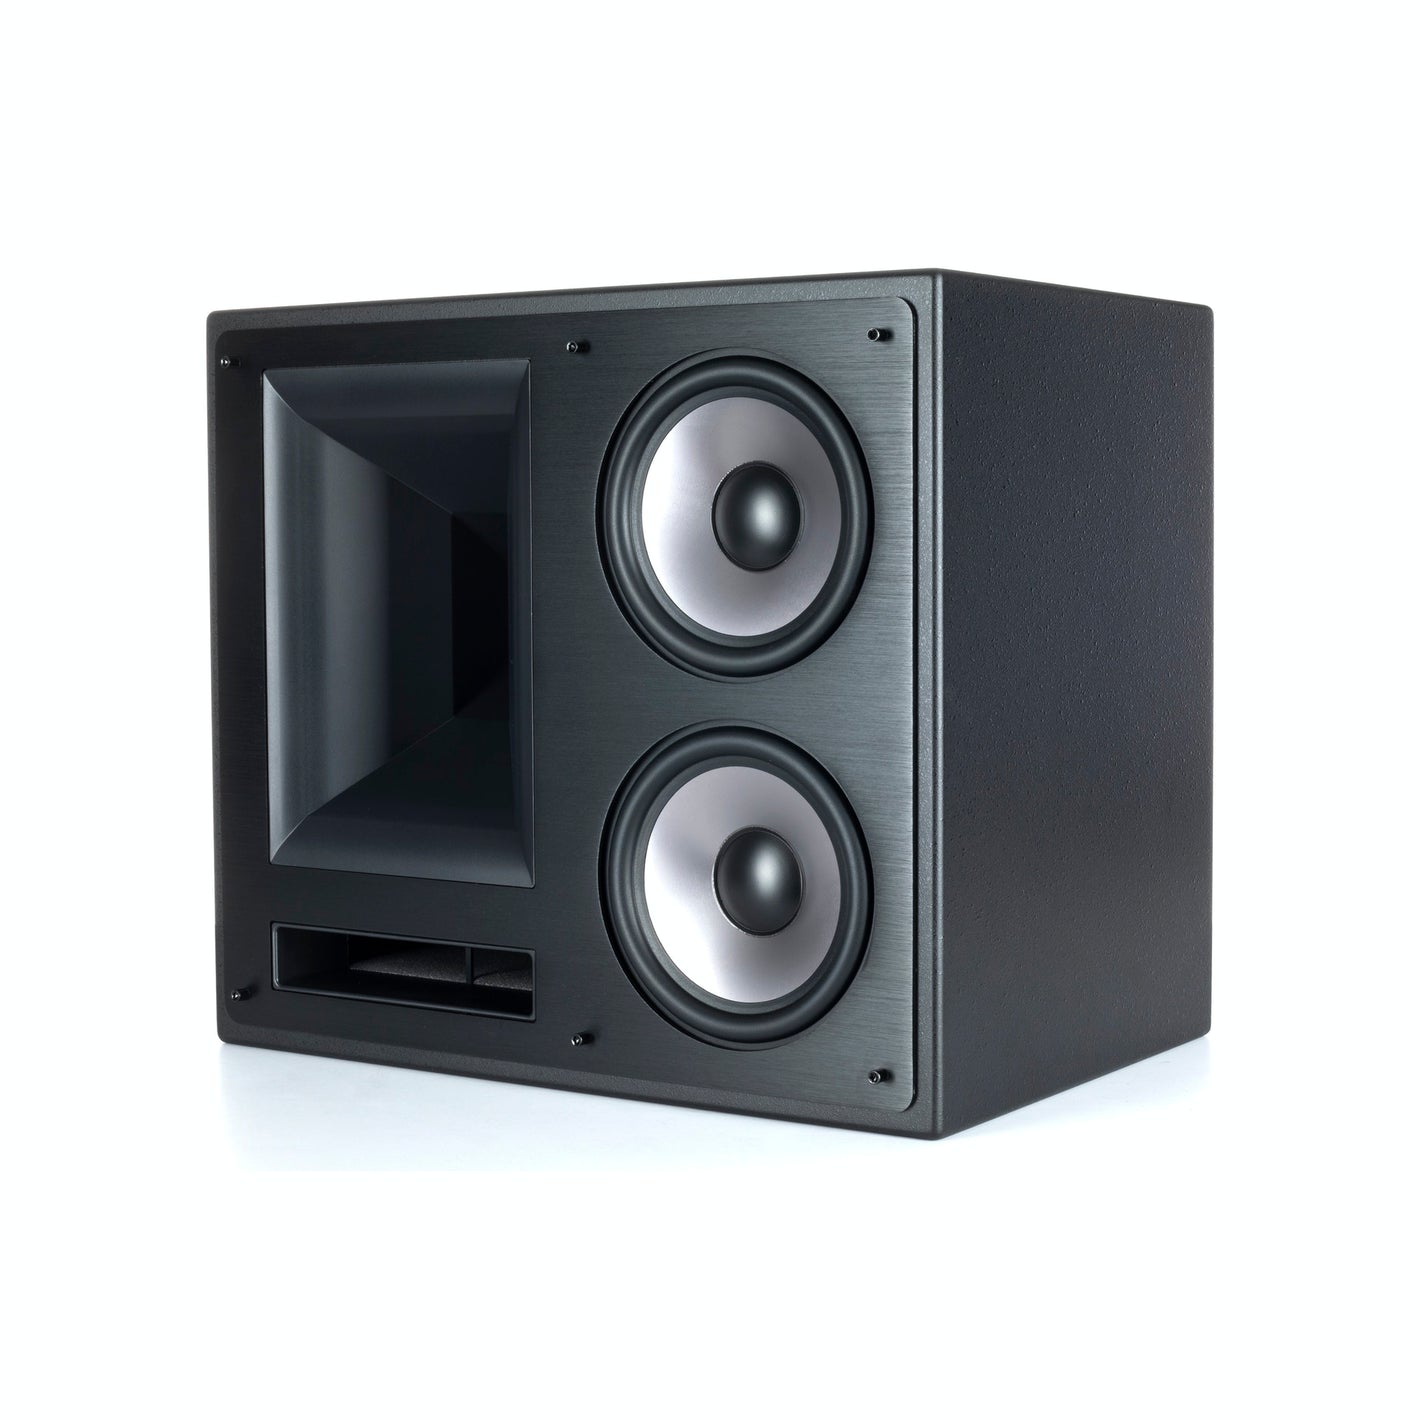 Klipsch THX-5000-LCR Theater Loud Speaker